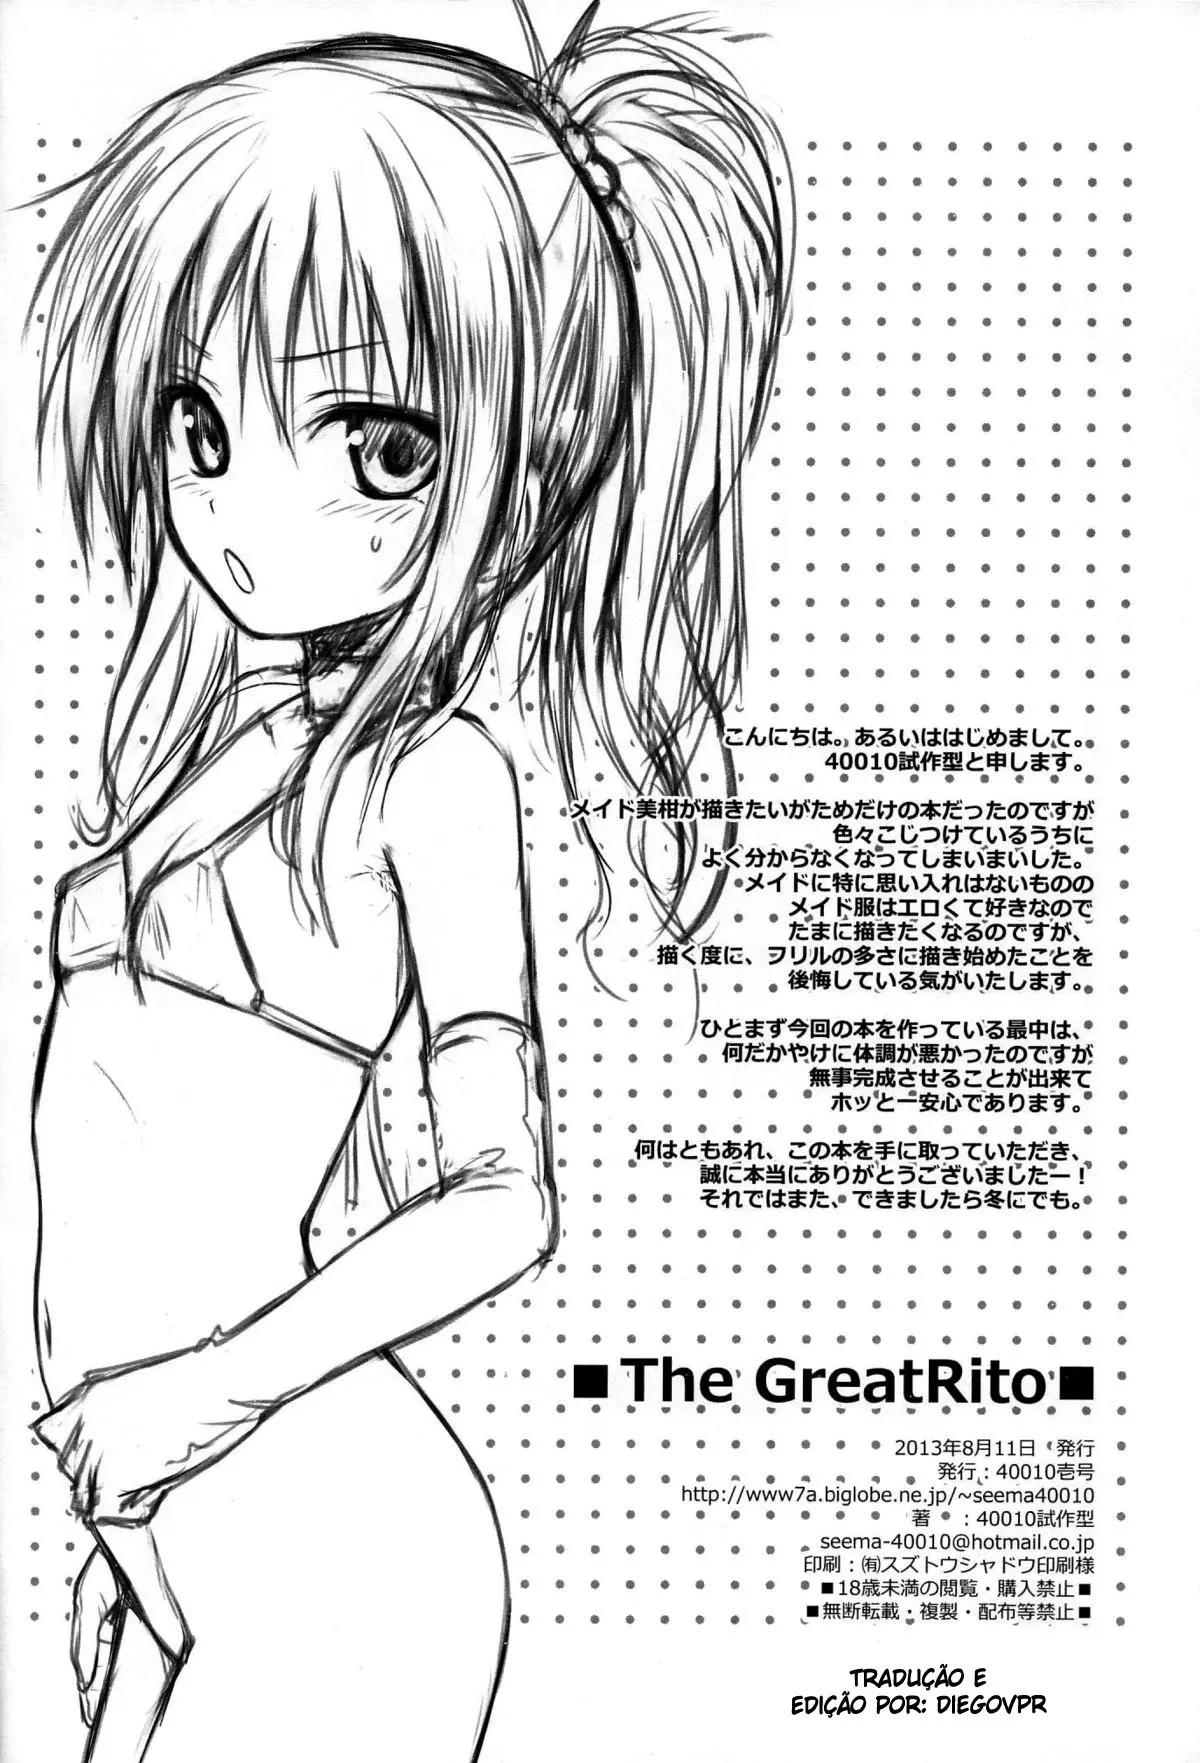 The GreatRito